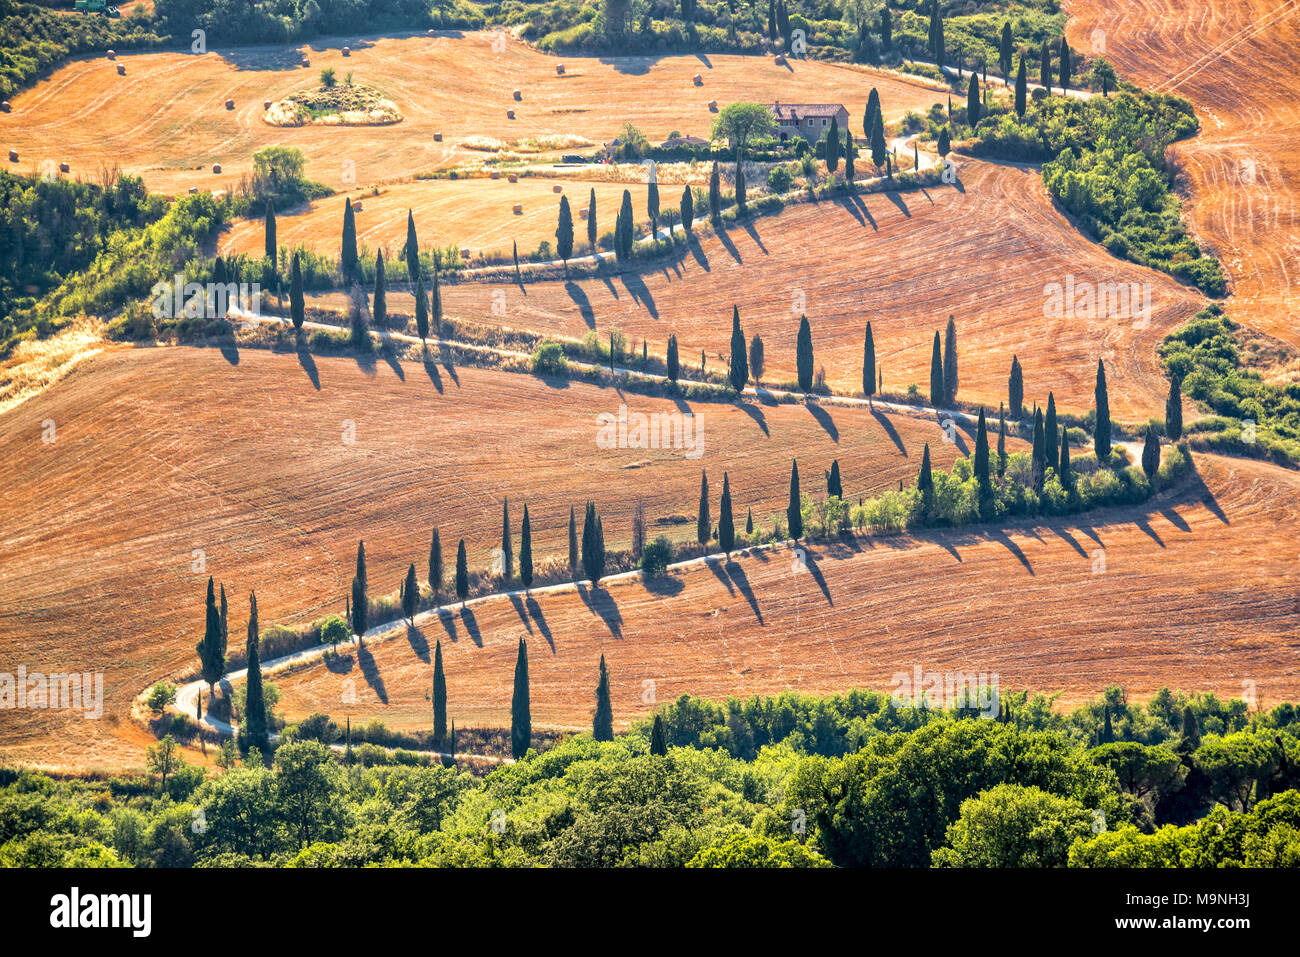 Beau paysage typique de la Toscane avec des rangées de cyprès, La Foce, Toscane, Italie Banque D'Images